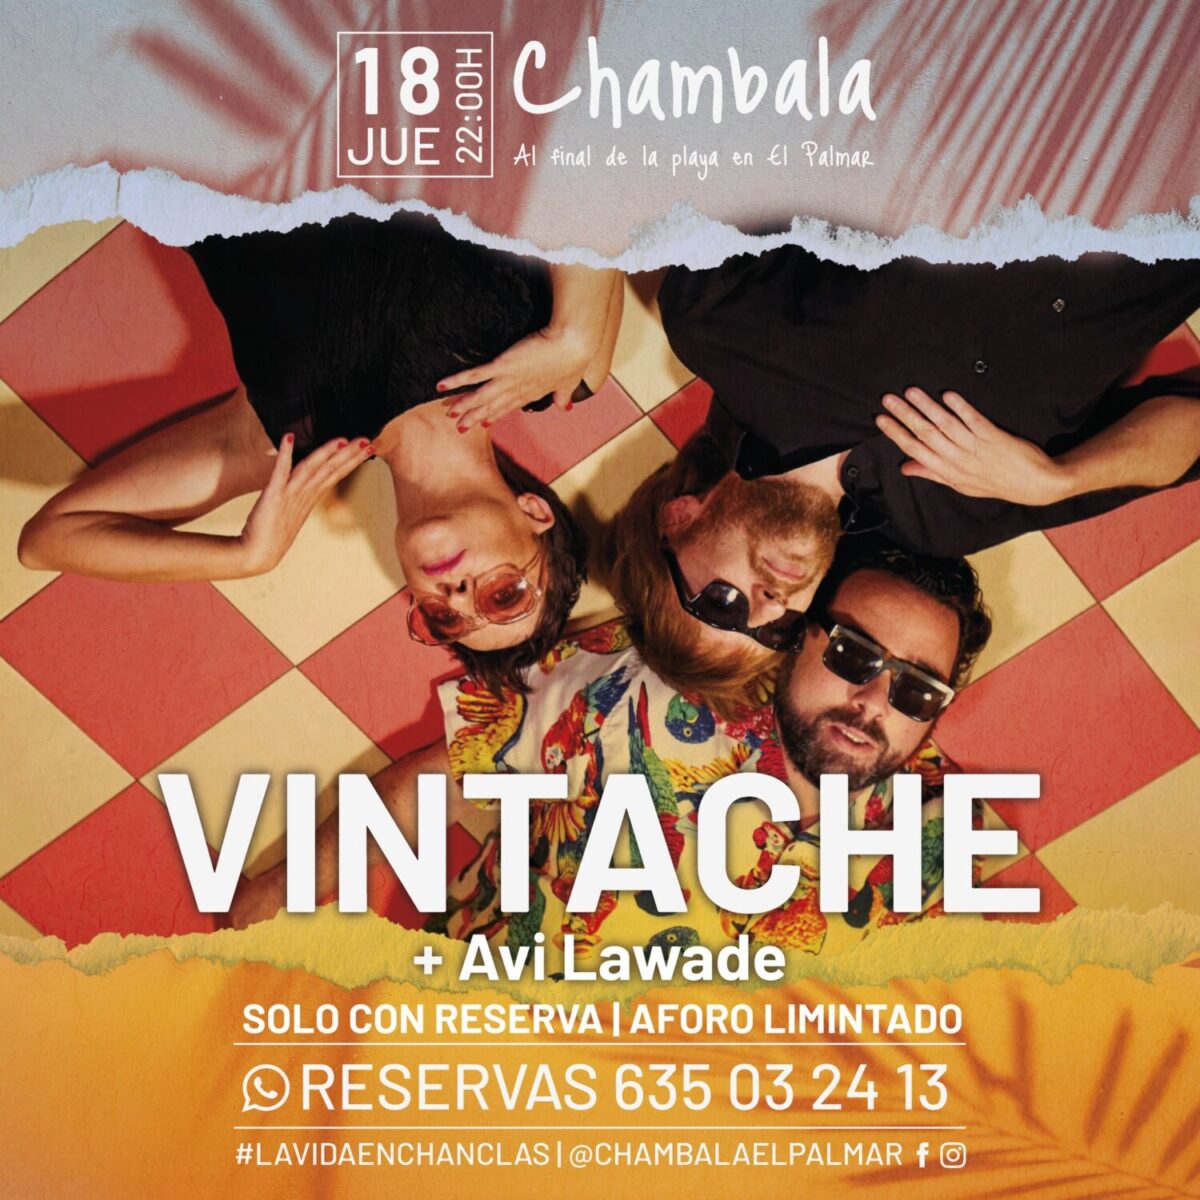 Actuación Vintache + Avi Lawade en Chambala El Palmar